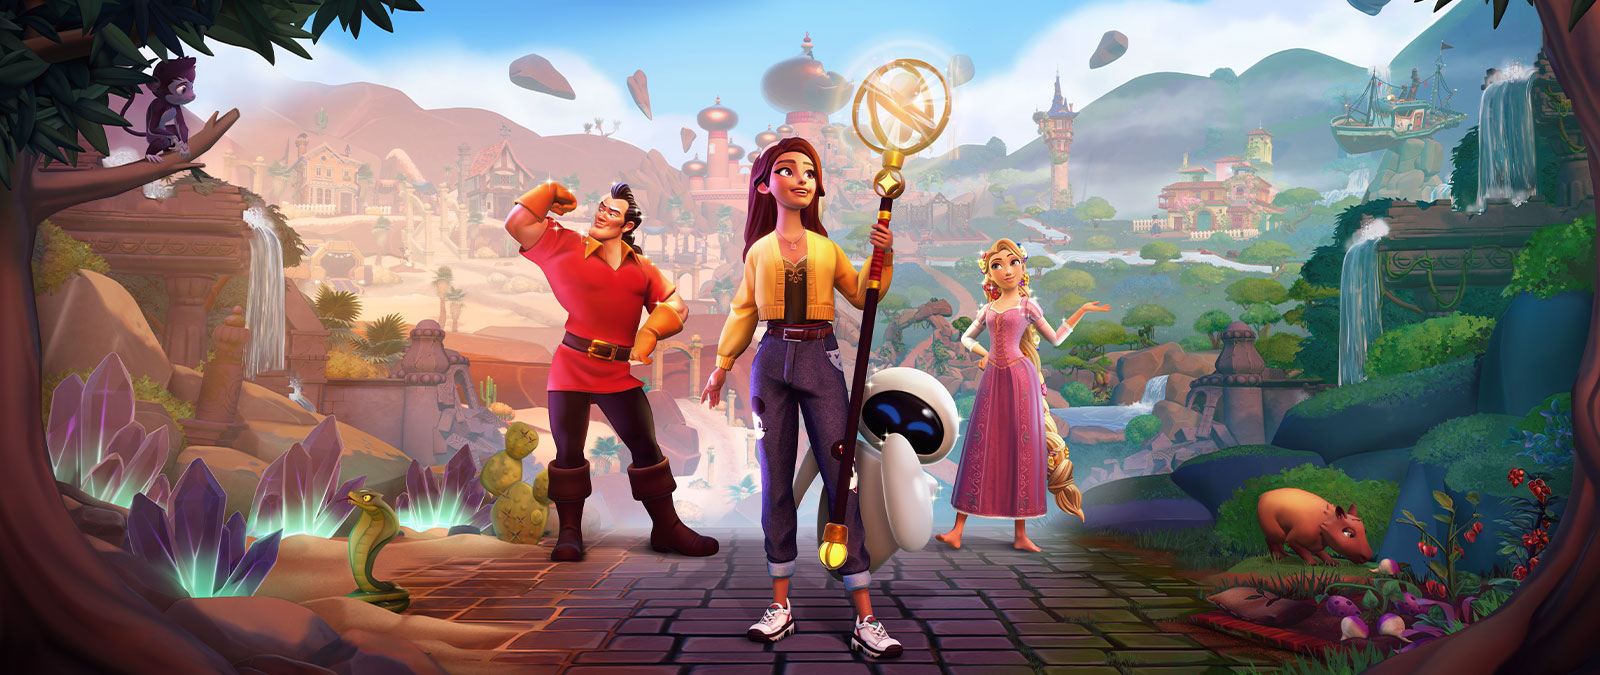 Disney Dreamlight Valley trará a magia para o PC, Xbox e com Game